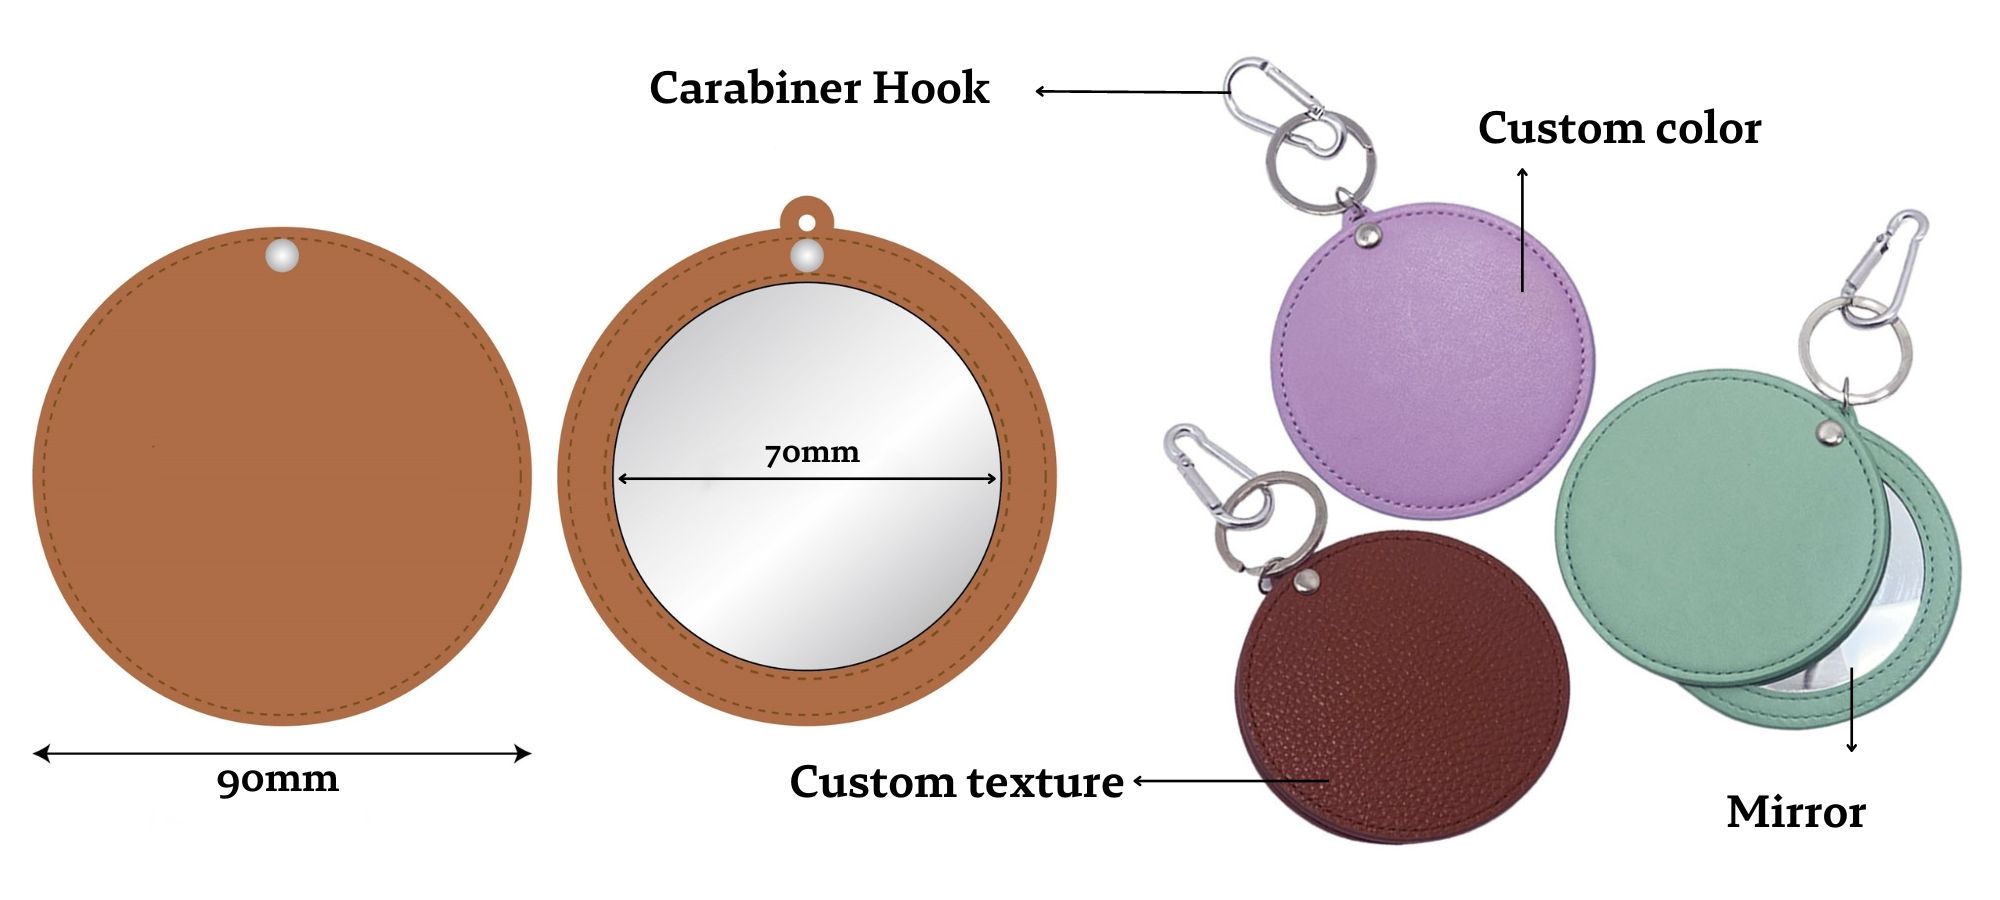 Miroir compact en cuir personnalisé pour sac à main.